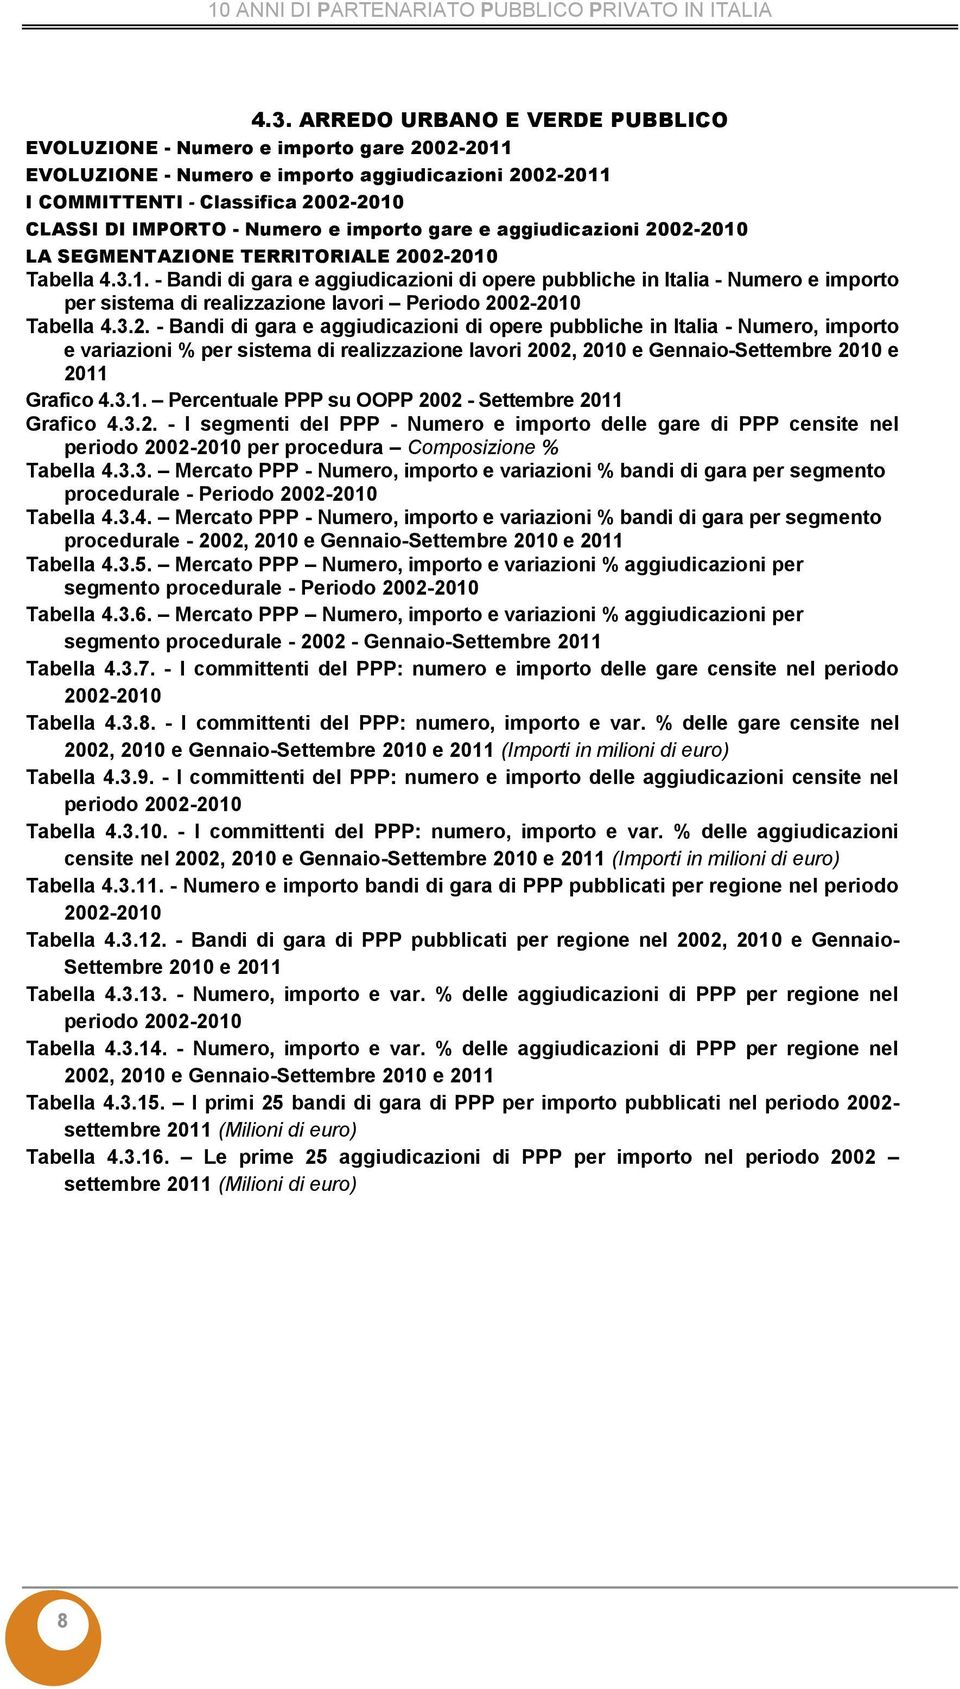 - Bandi di gara e aggiudicazioni di opere pubbliche in Italia - Numero, importo Grafico 4.3.1. Percentuale PPP su OOPP 20